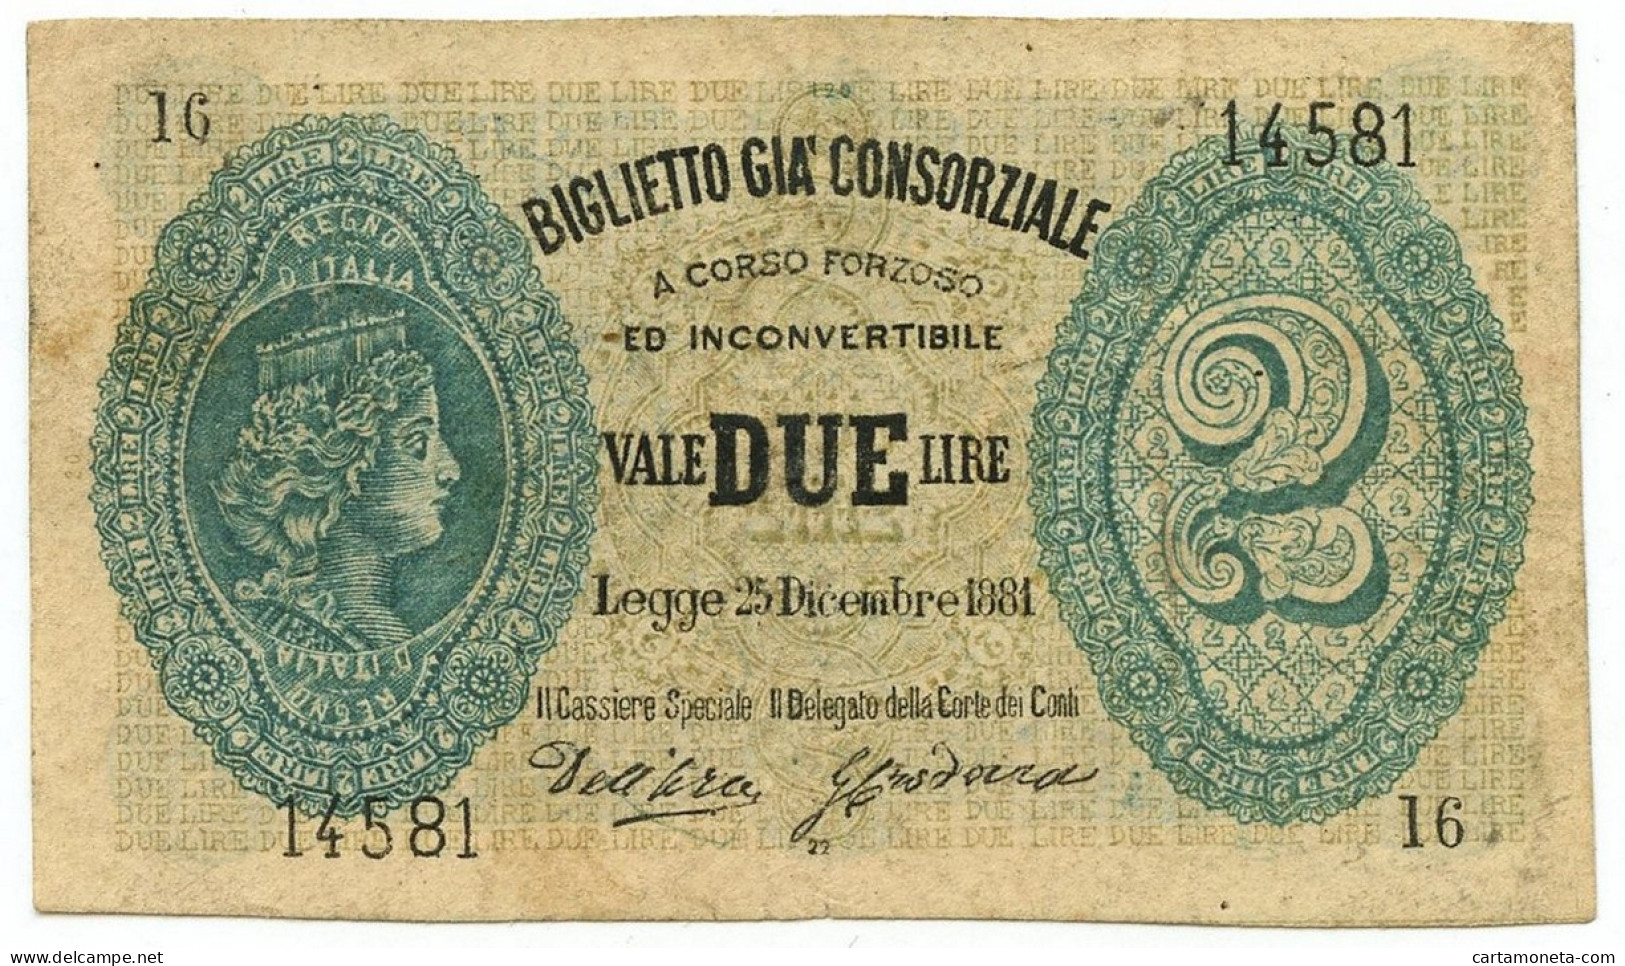 2 LIRE FALSO D'EPOCA BIGLIETTO GIÀ CONSORZIALE REGNO D'ITALIA 25/12/1881 BB - [ 8] Fakes & Specimens